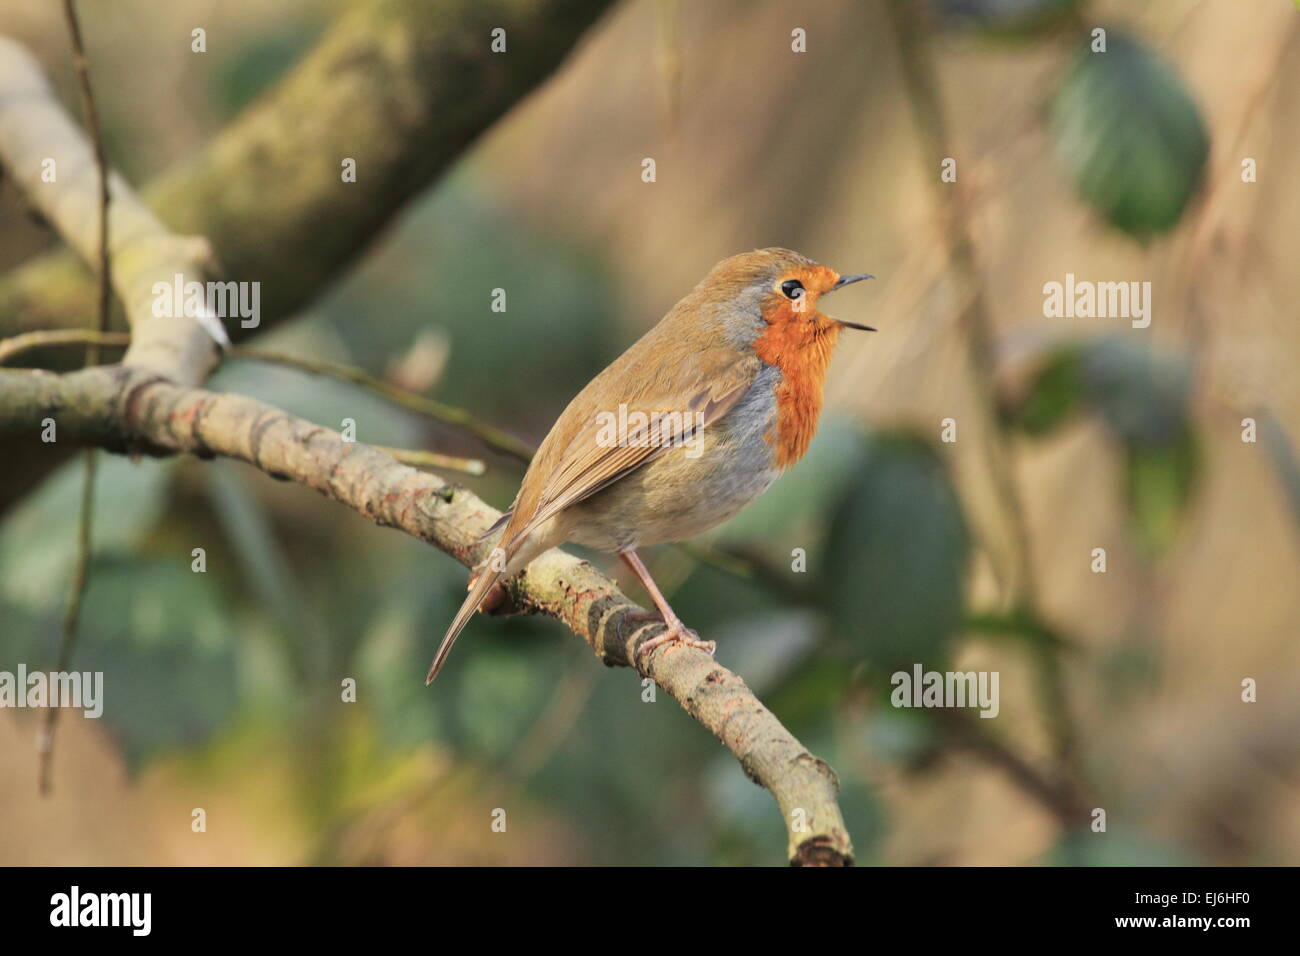 Petirrojo Erithacus rubecula insectívora paseriformes songbird de seto y jardín Foto de stock